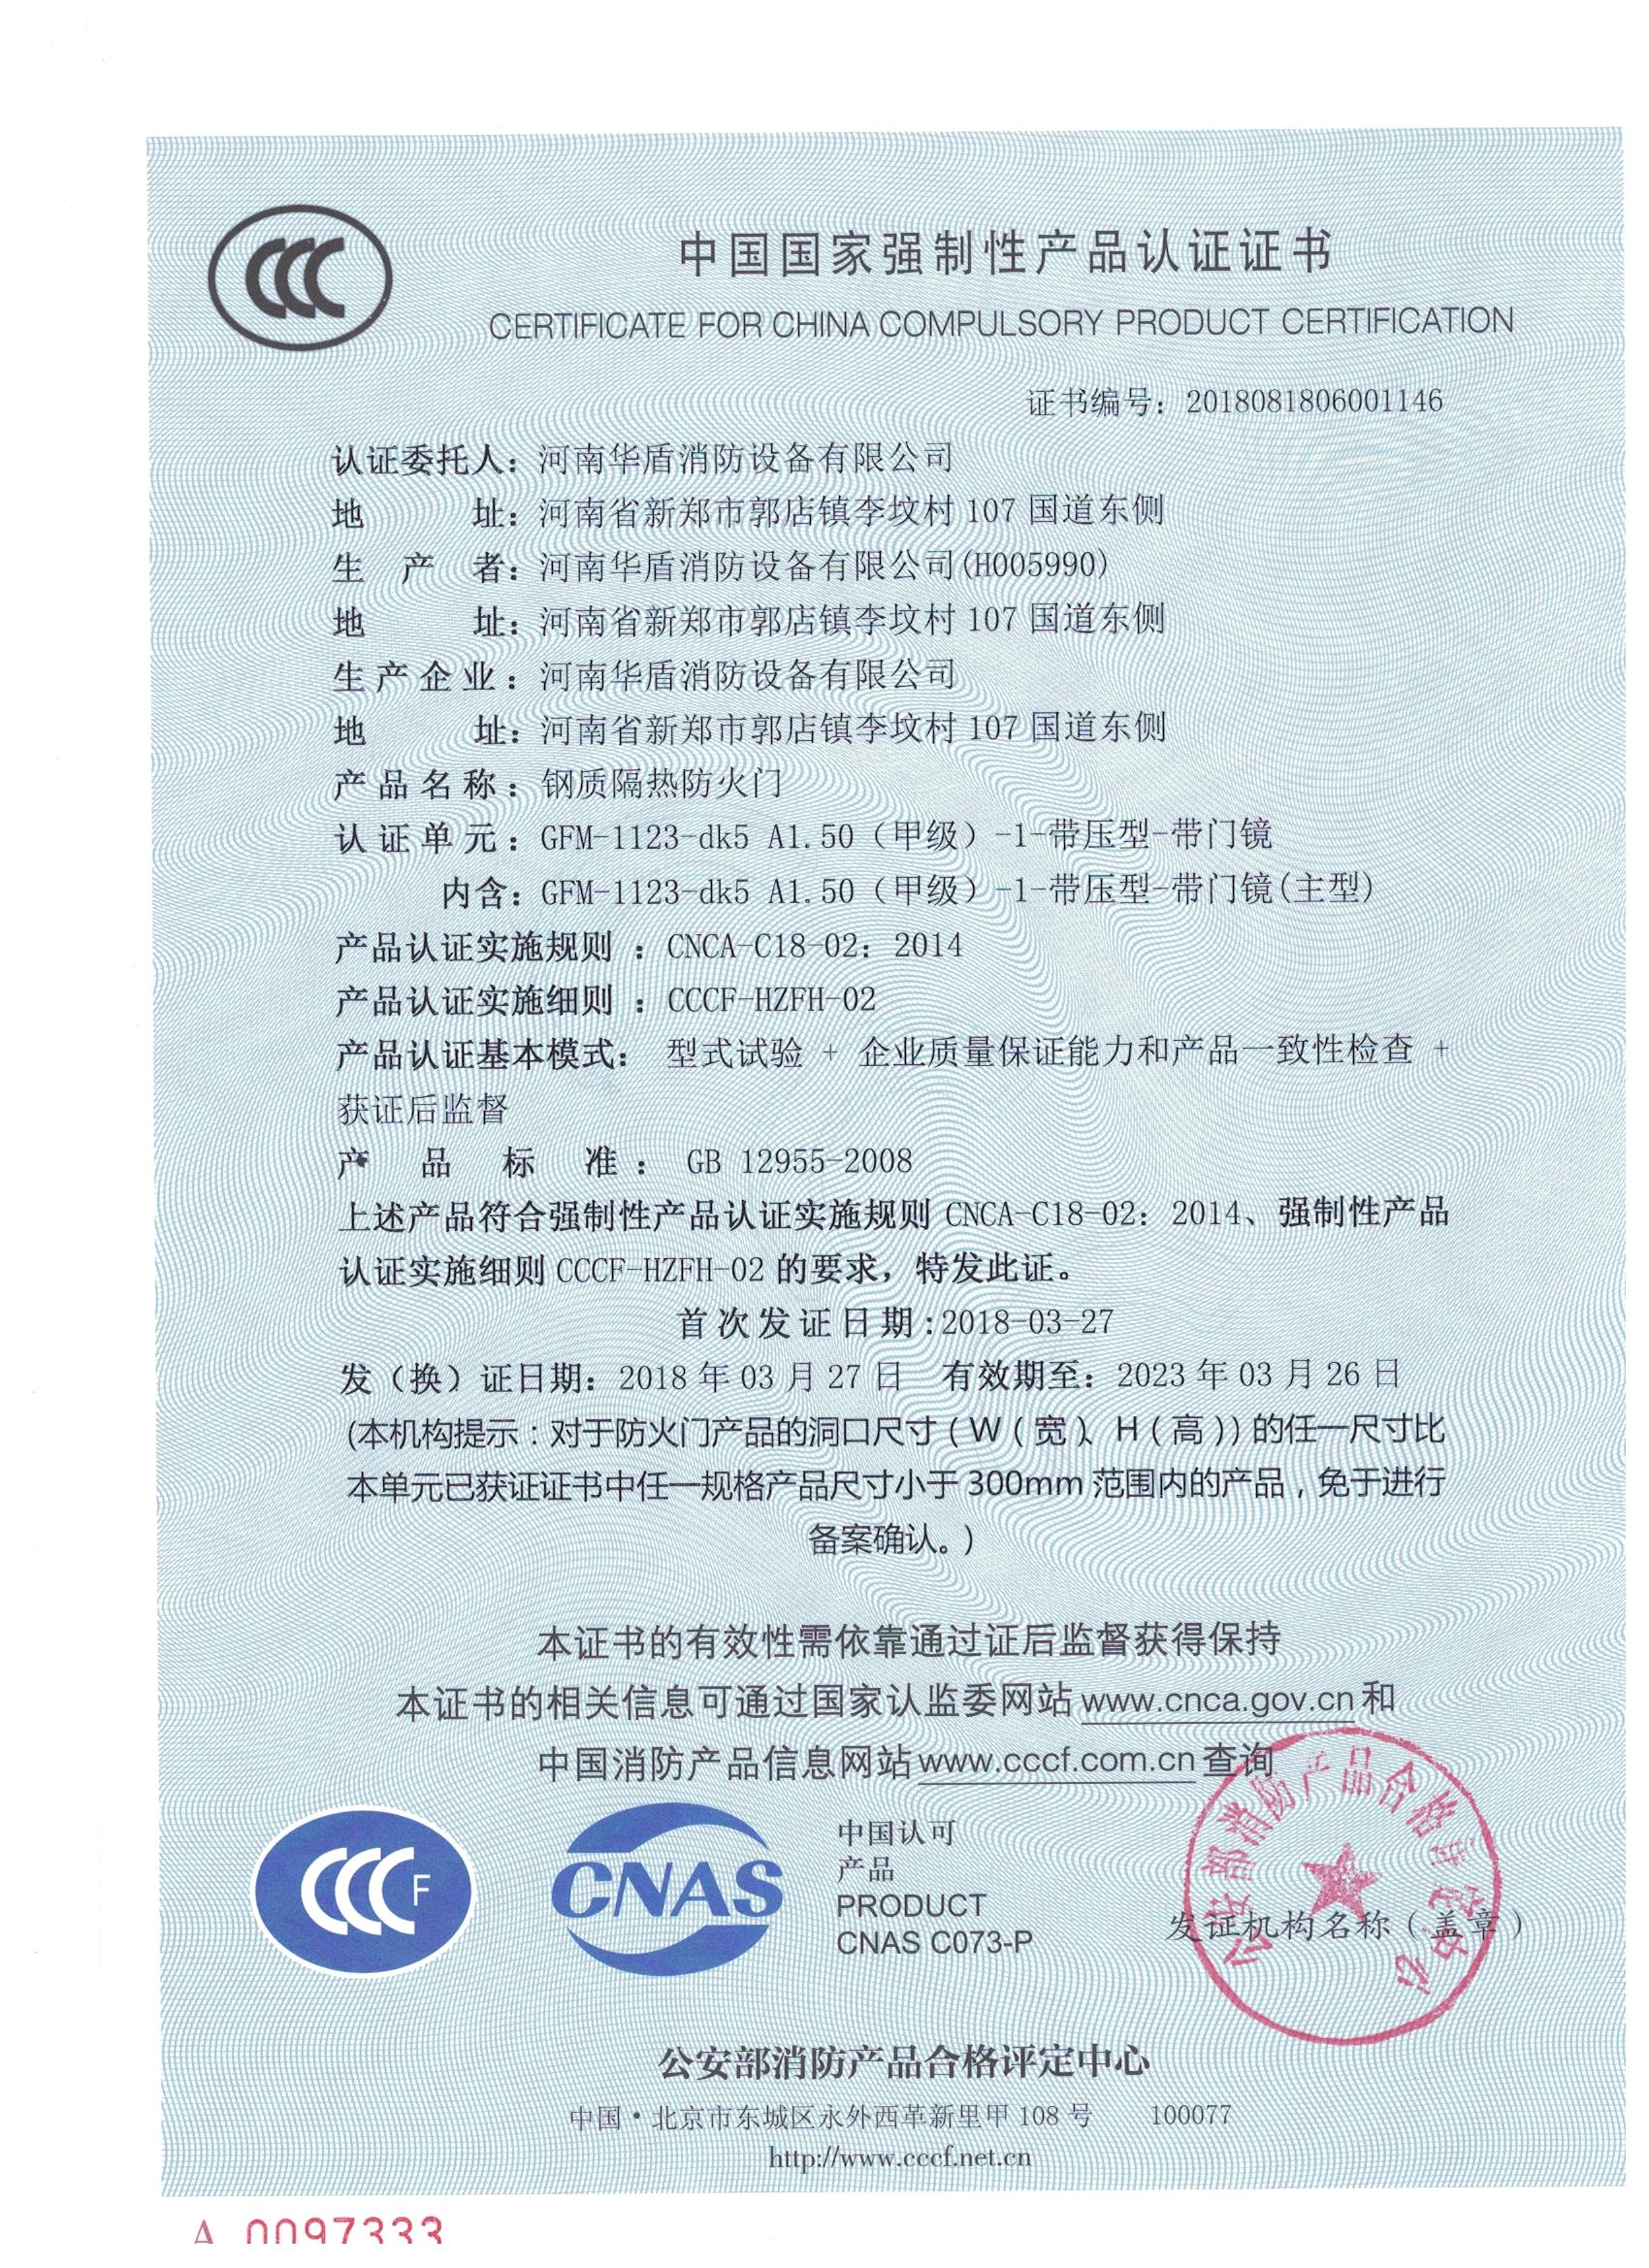 陕西GFM-1123-dk5A1.50(甲级）-1-3C证书